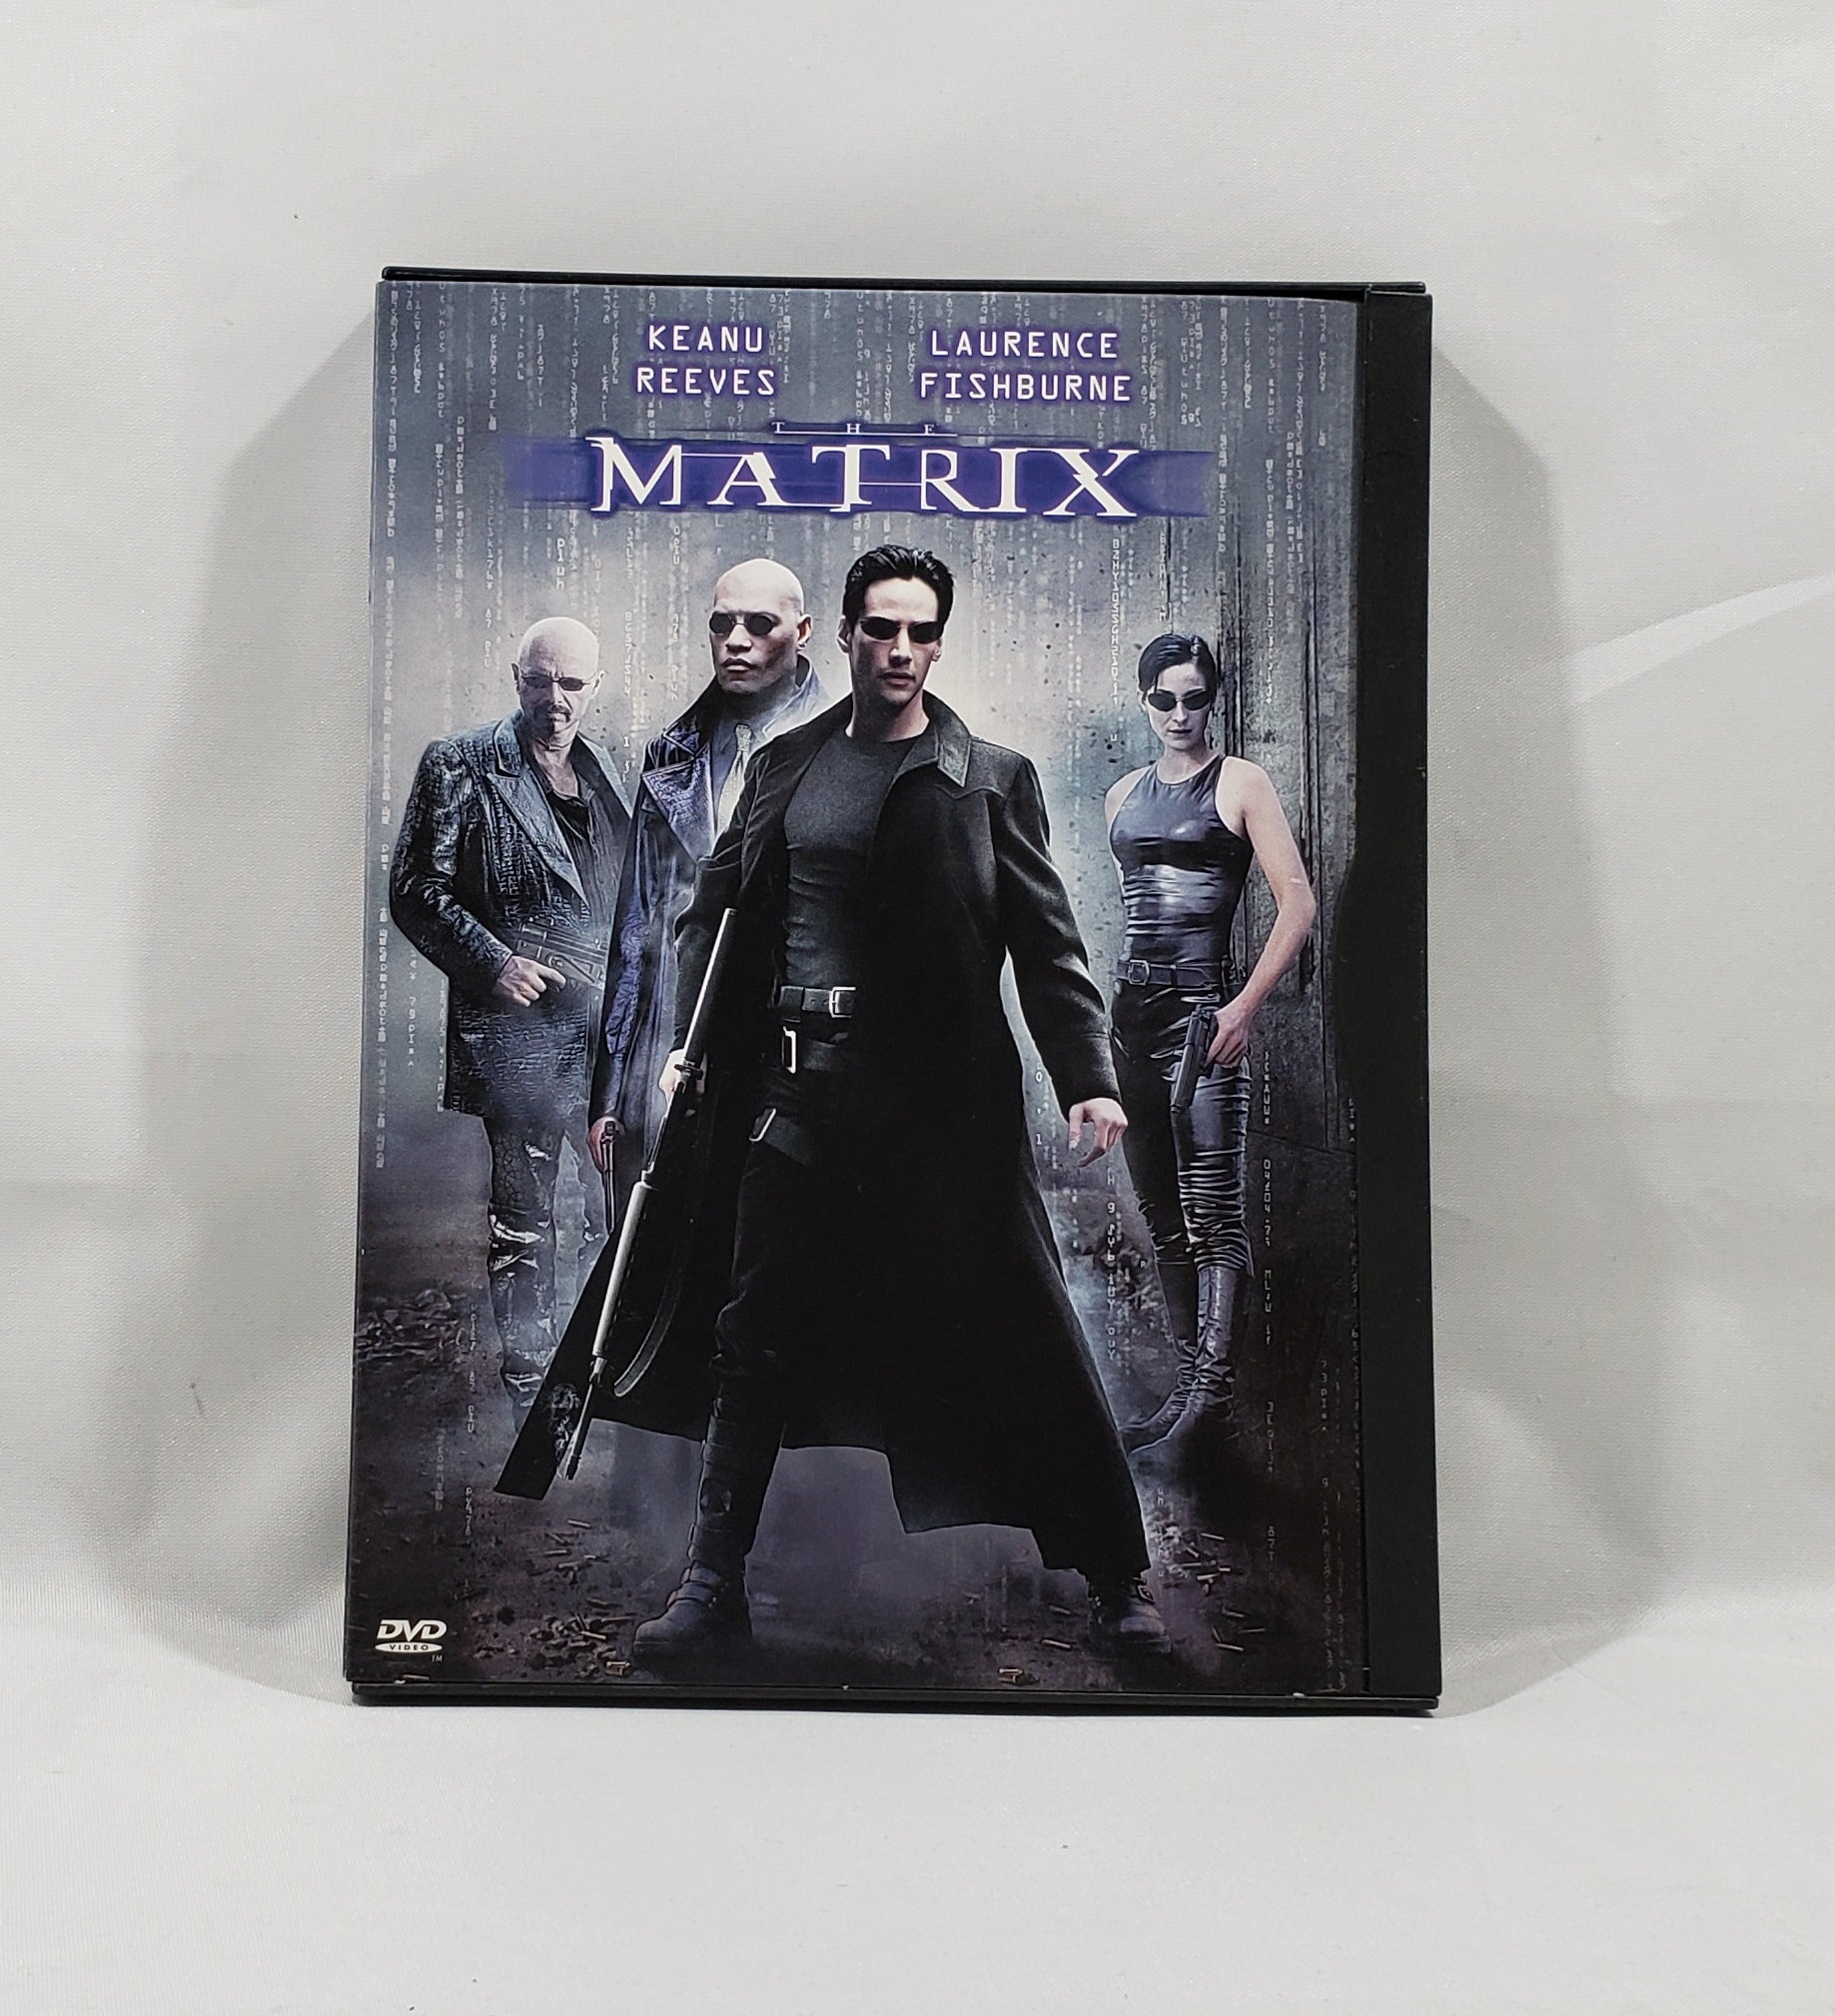 DVD: The Matrix (1999 Widescreen)